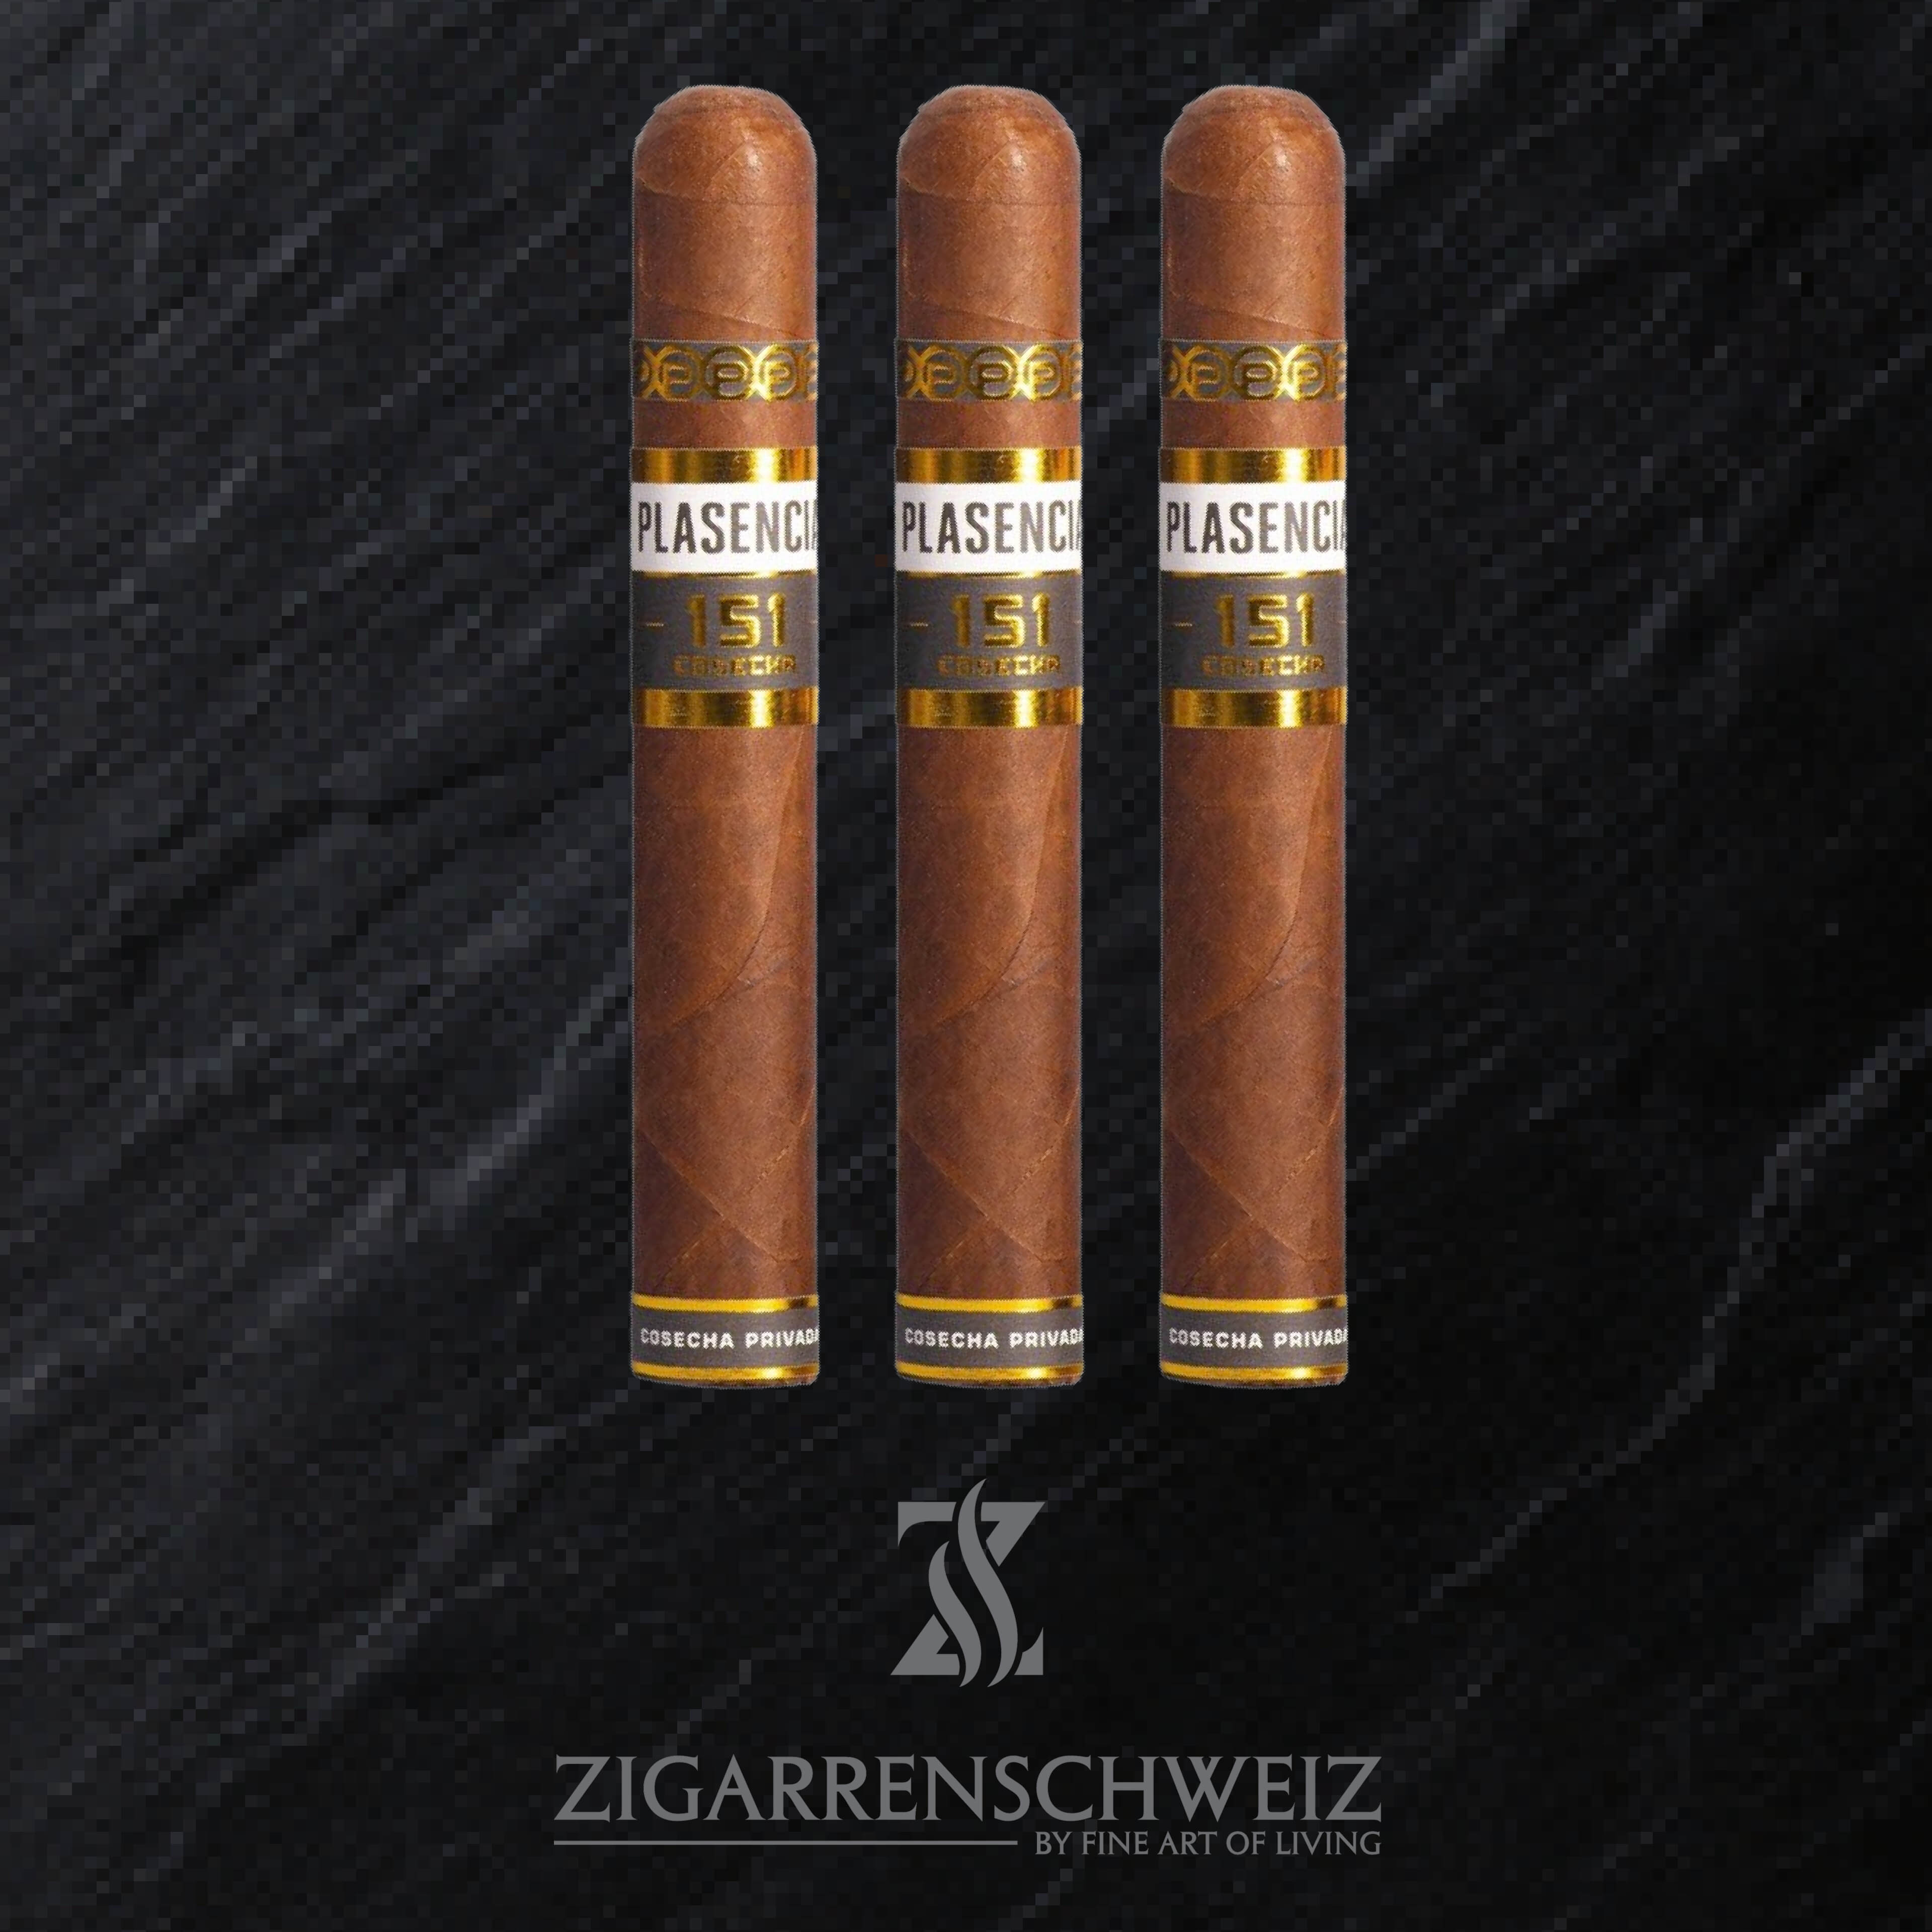 Plasencia Cosecha 151 Toro (La Tradicion) Zigarren 3er Etui von Zigarren Schweiz